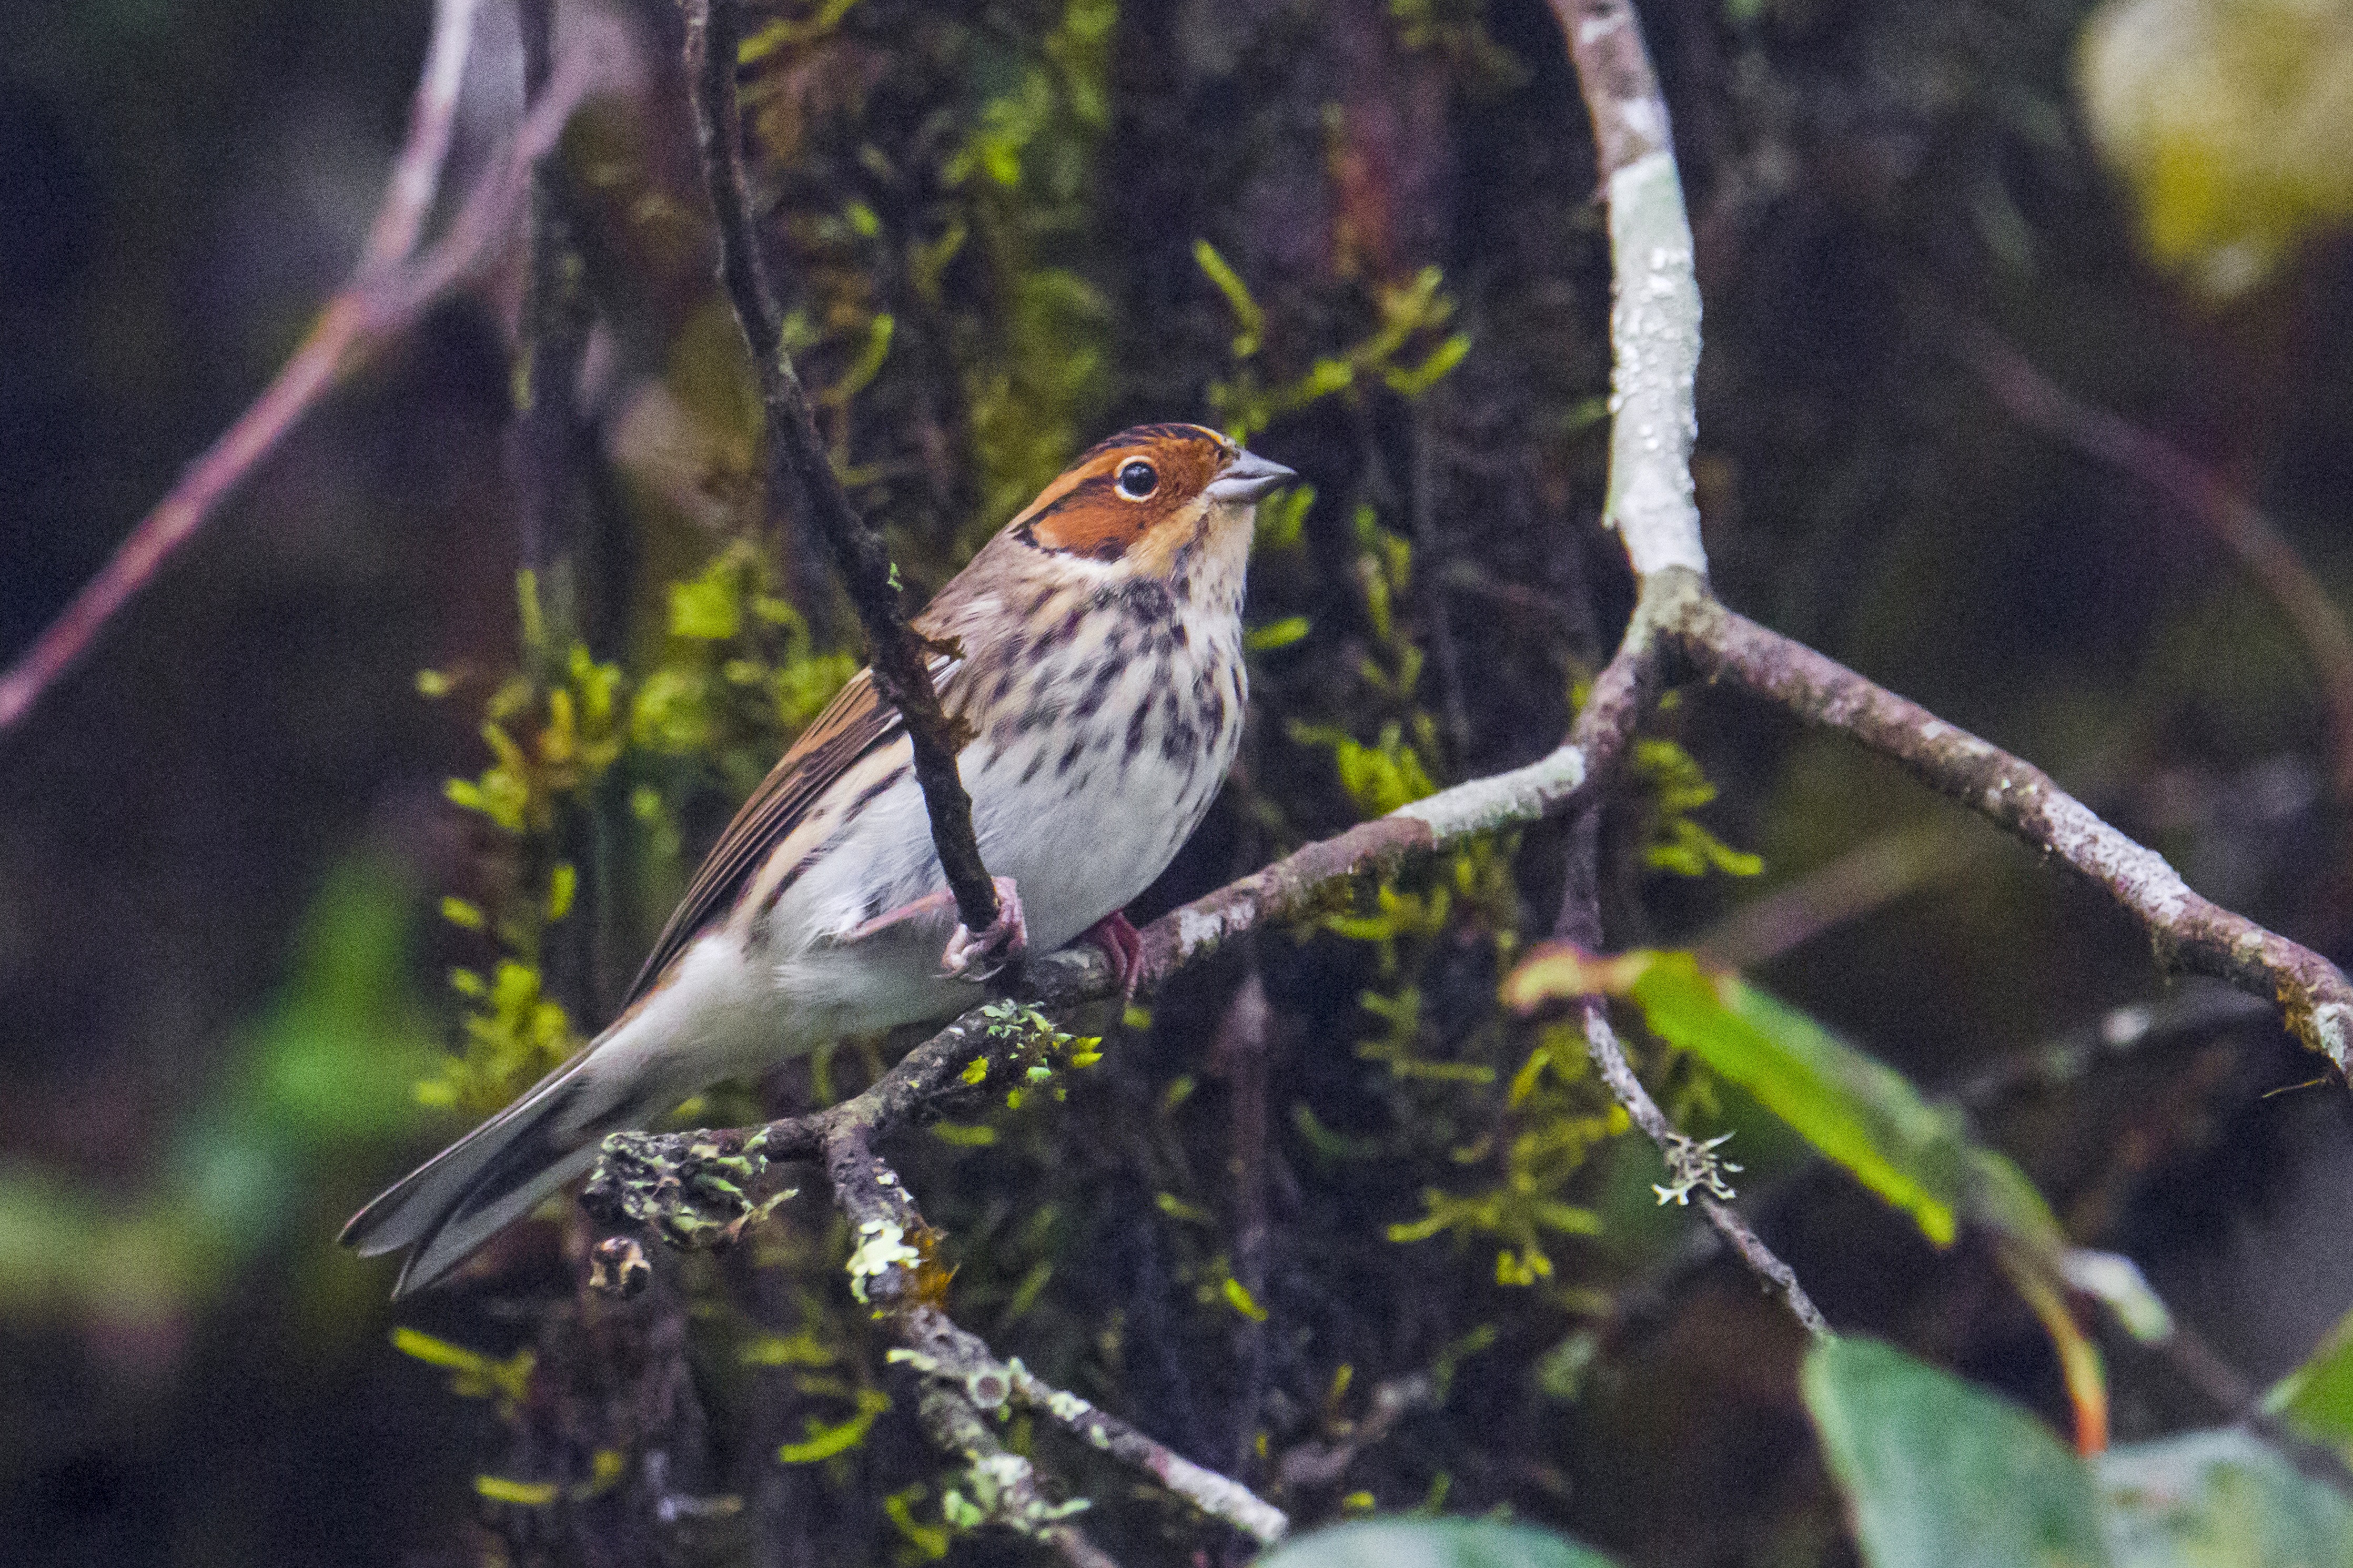 Little Bunting observed in Arunachal Pradesh